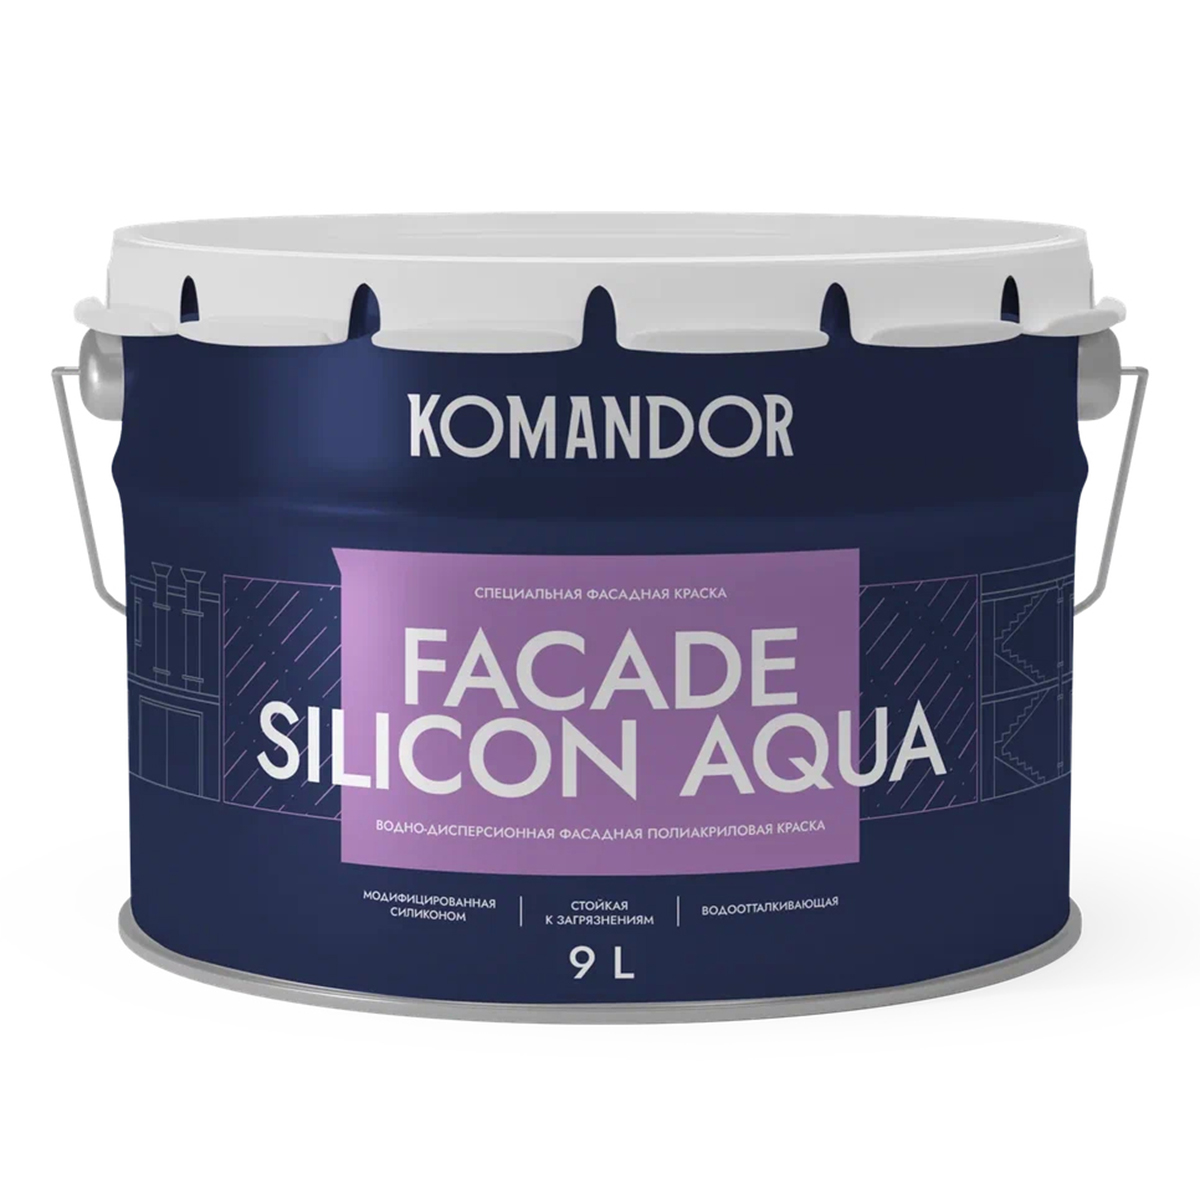 фото Краска фасадная komandor facade silicon aqua, глубокоматовая, база с, бесцветный, 9 л